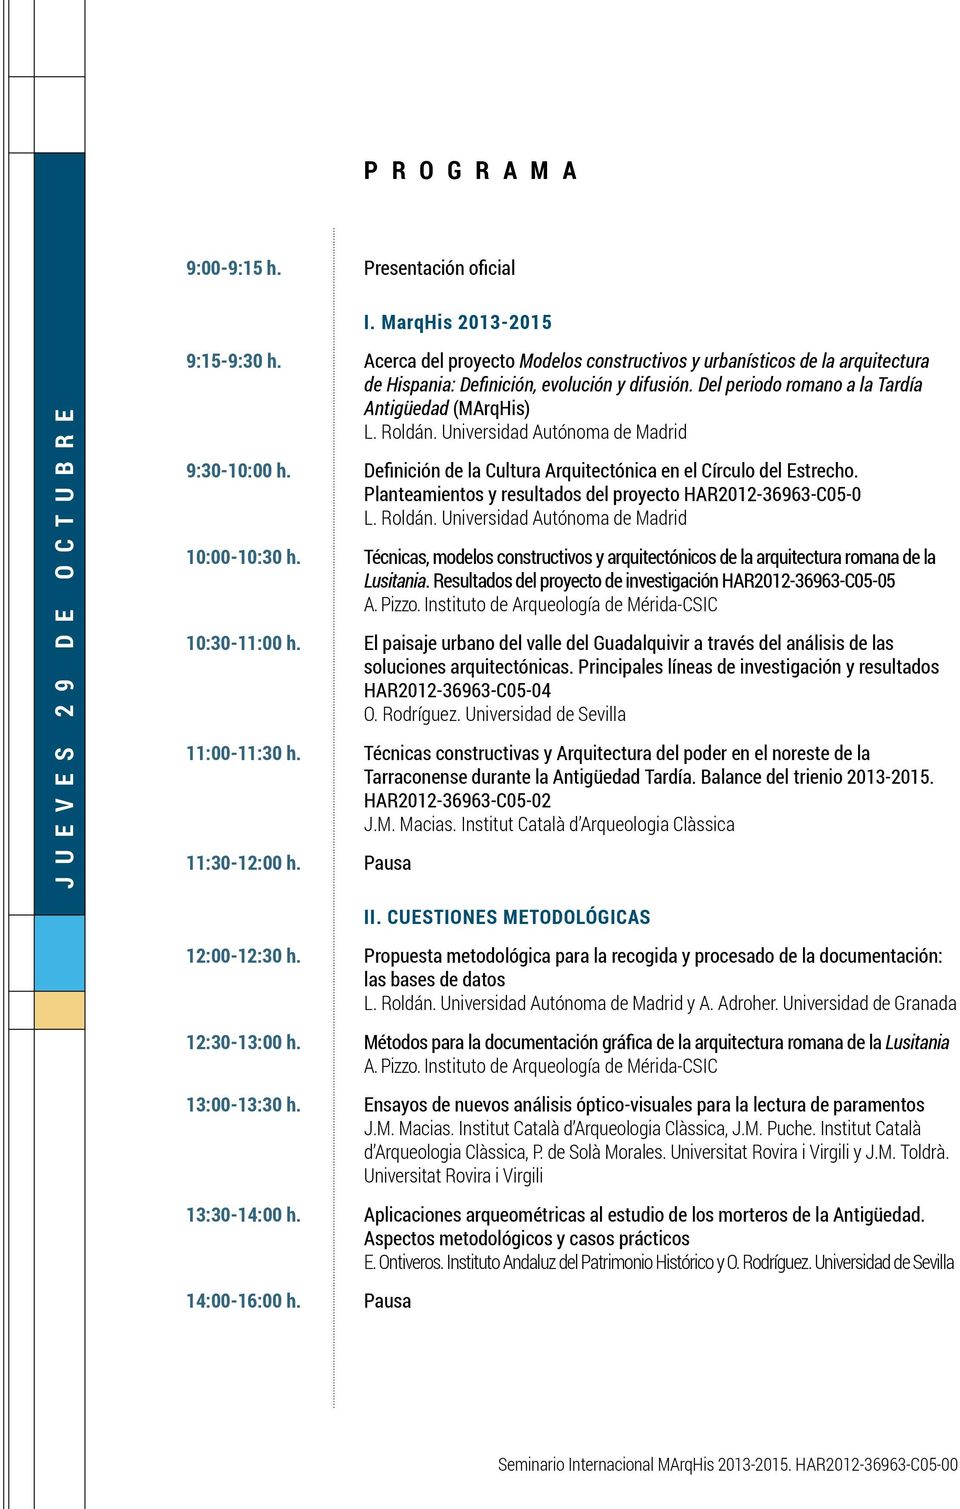 Universidad Autónoma de Madrid 9:30-10:00 h. Definición de la Cultura Arquitectónica en el Círculo del Estrecho. Planteamientos y resultados del proyecto HAR2012-36963-C05-0 L. Roldán.